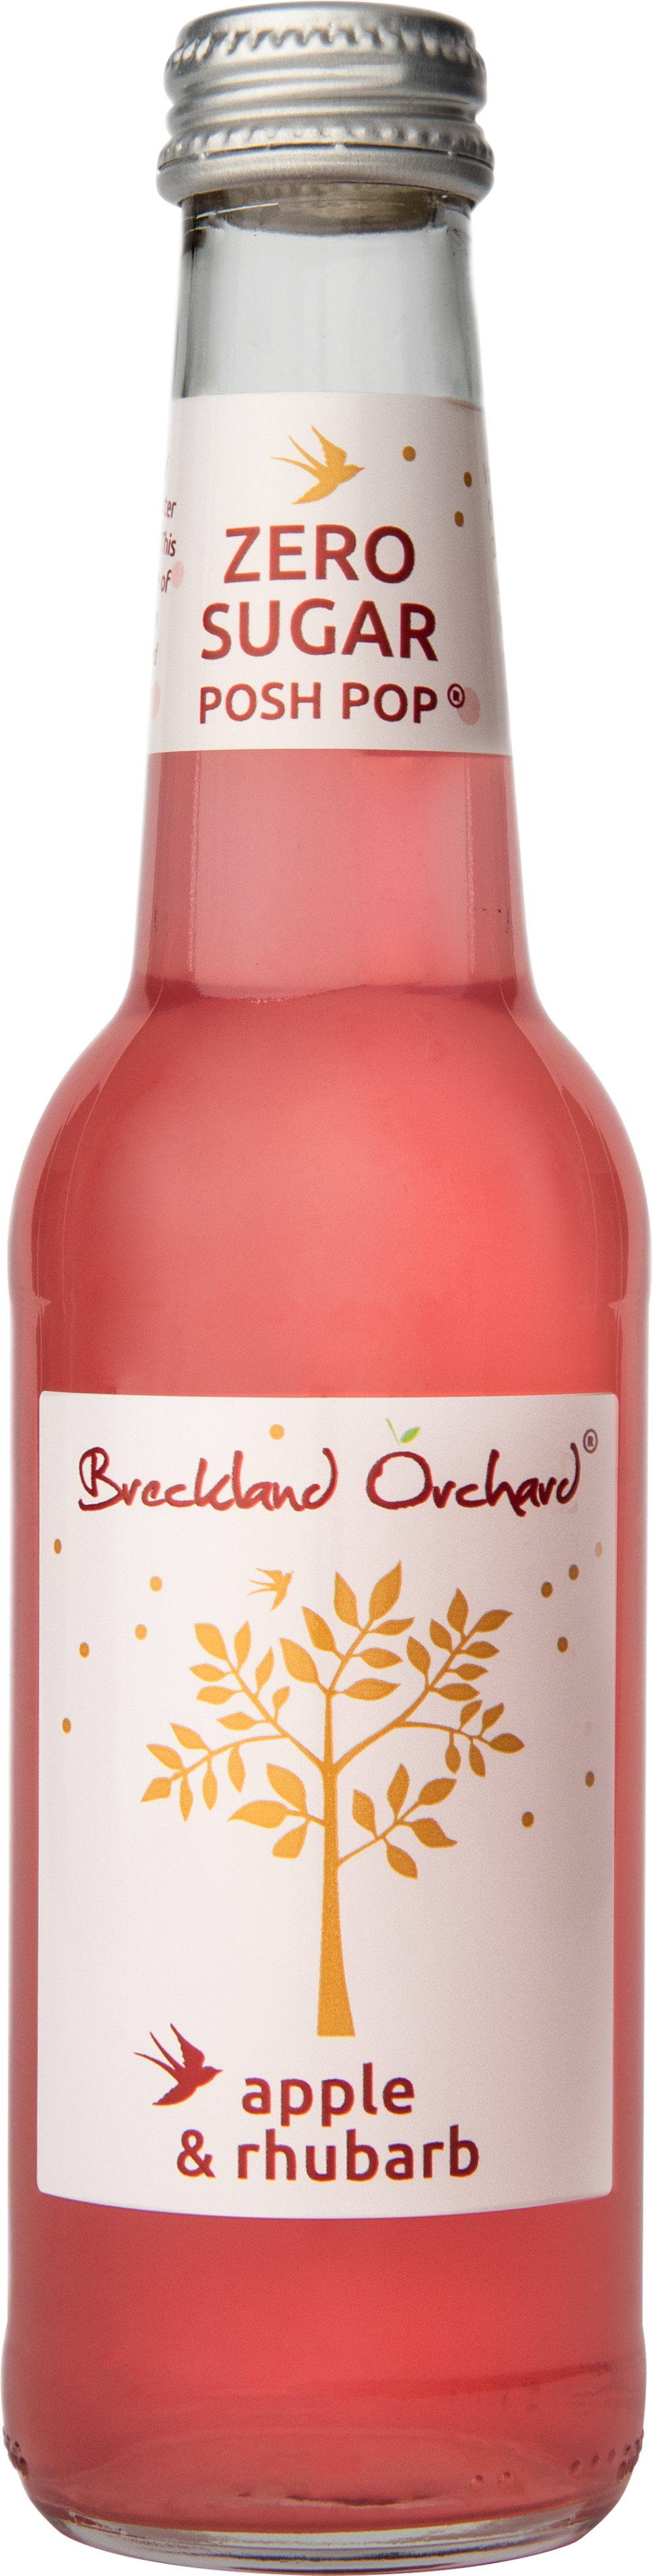 BRECKLAND ORCHARD Zero Sugar Posh Pop Apple & Rhubarb 275ml